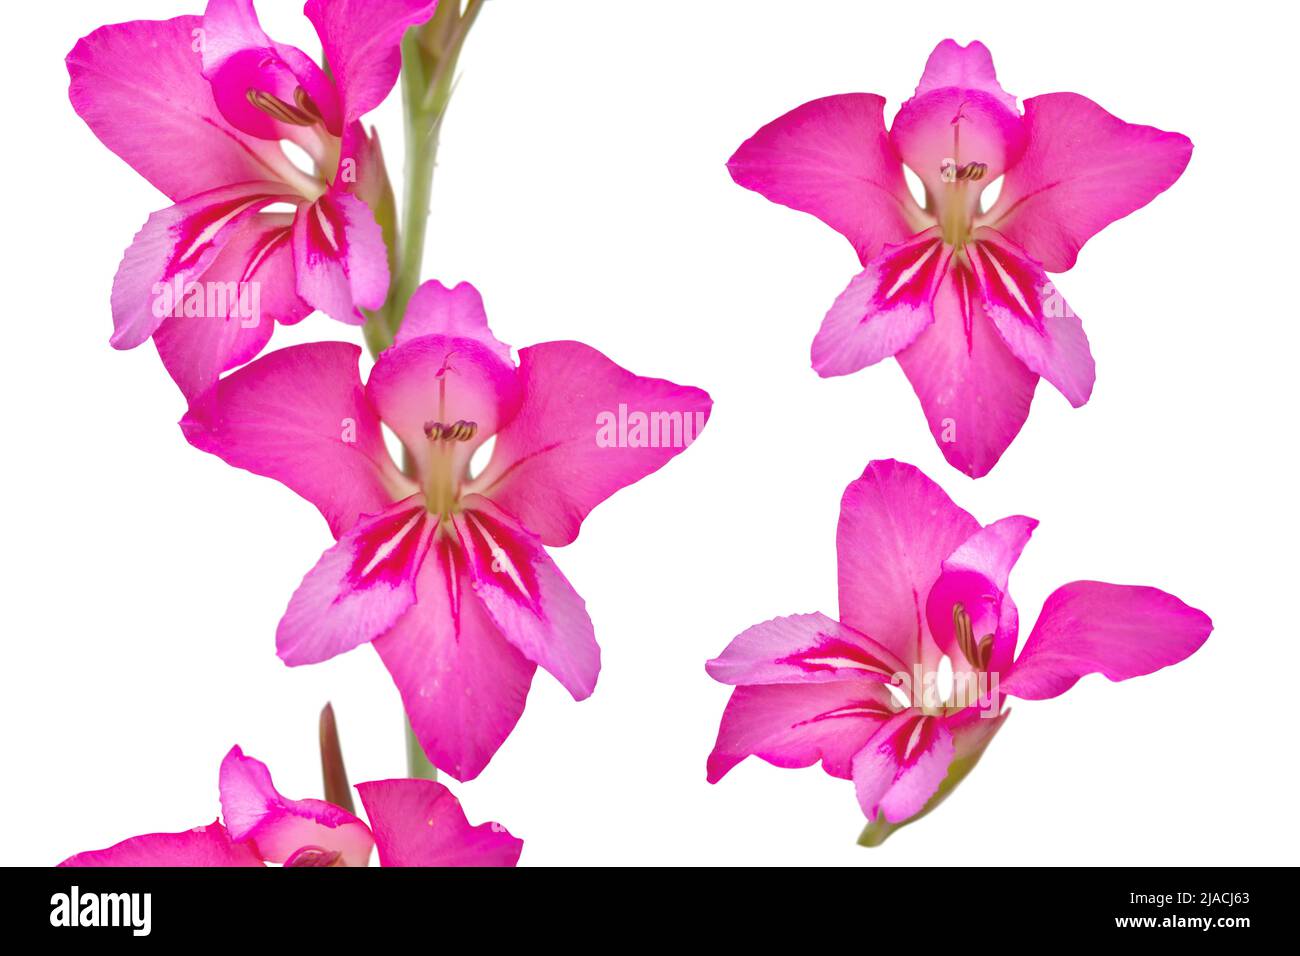 Gladiolus communis o gladiolo oriental o flores comunes de color rosa brillante con bandera de maíz aisladas sobre blanco Foto de stock